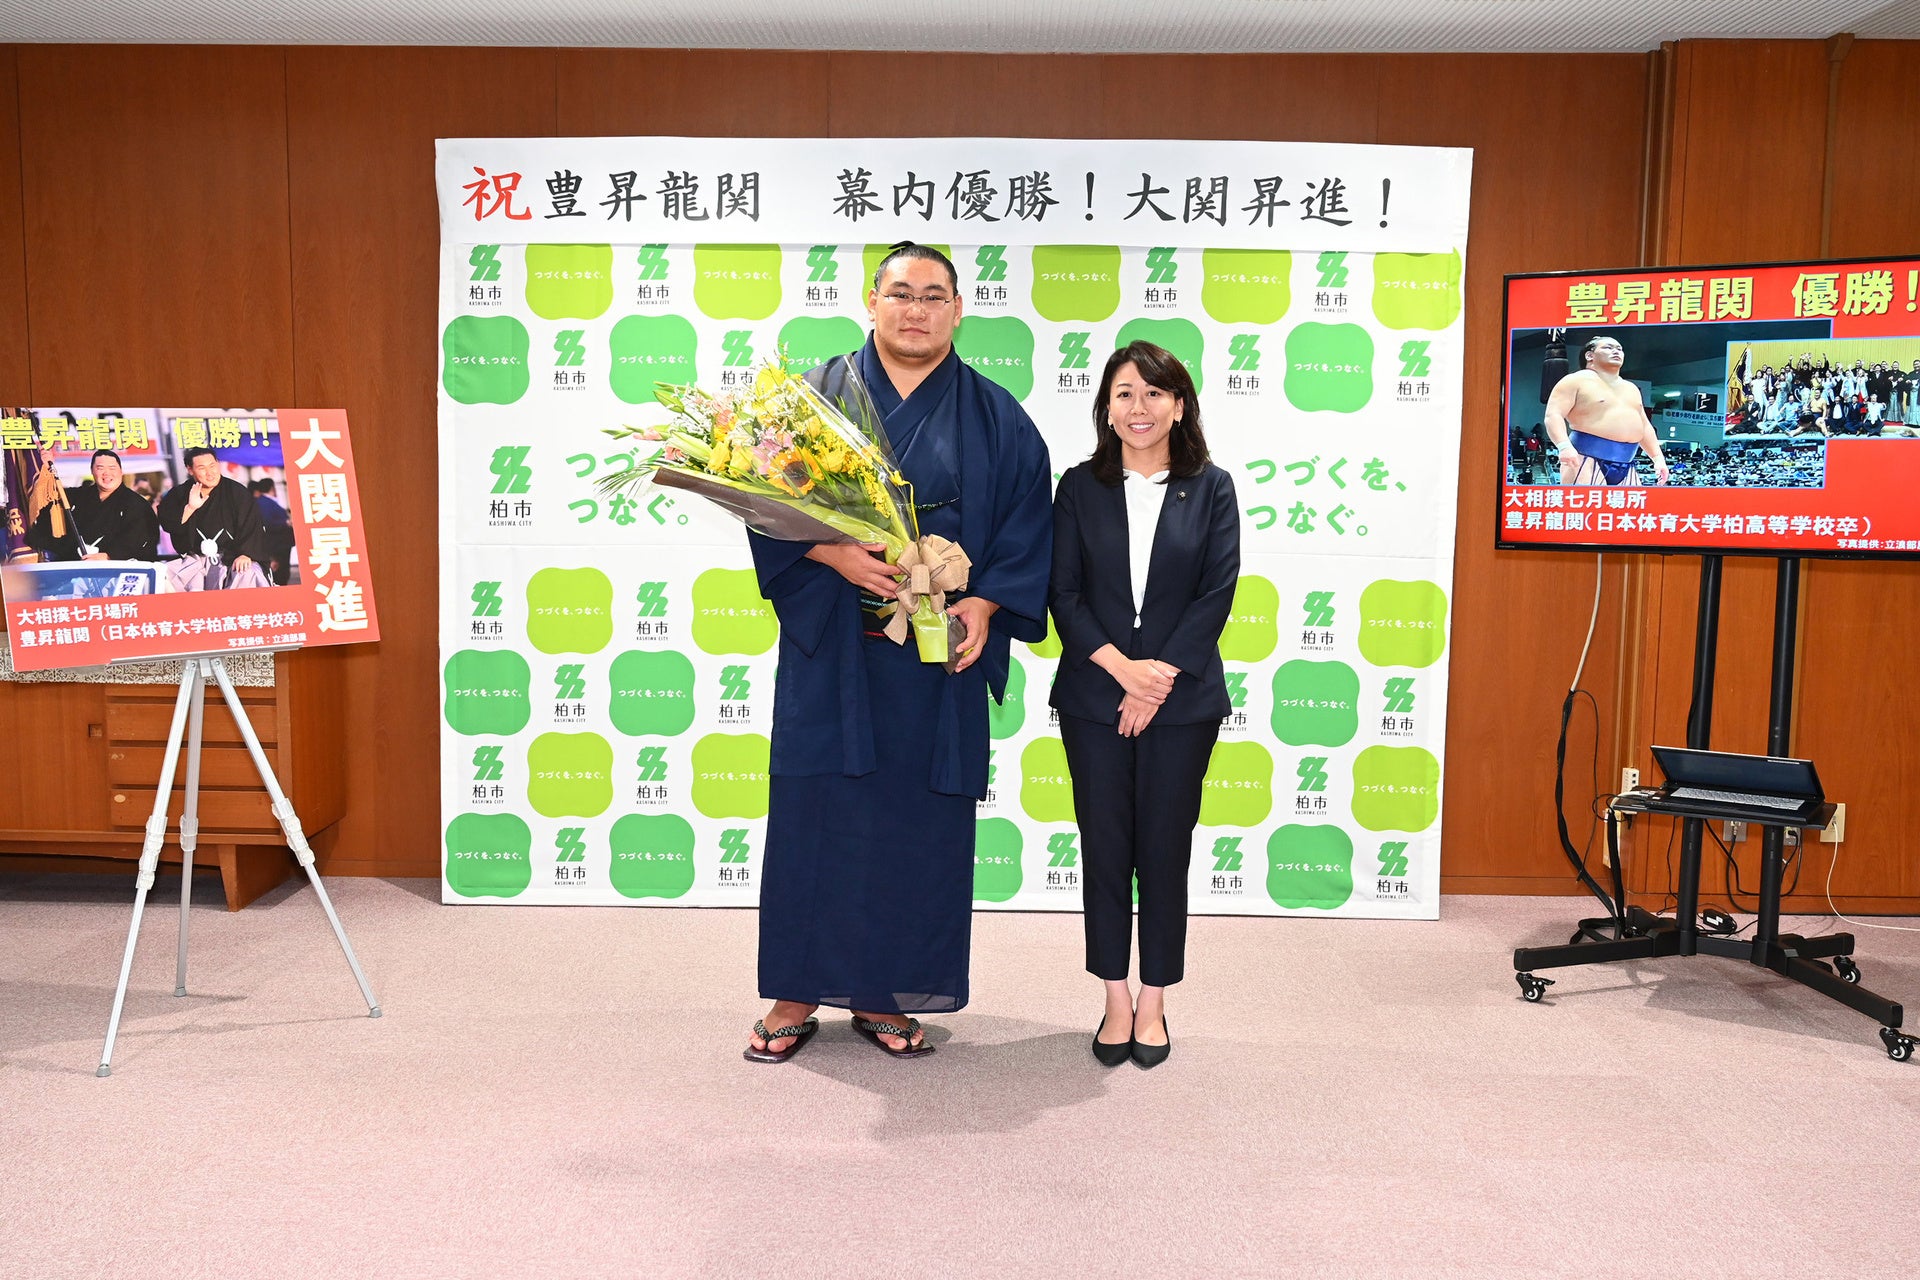 「柏は日本のふるさと」大相撲七月場所で幕内初優勝及び大関昇進の豊昇龍関が柏市長を表敬訪問しました